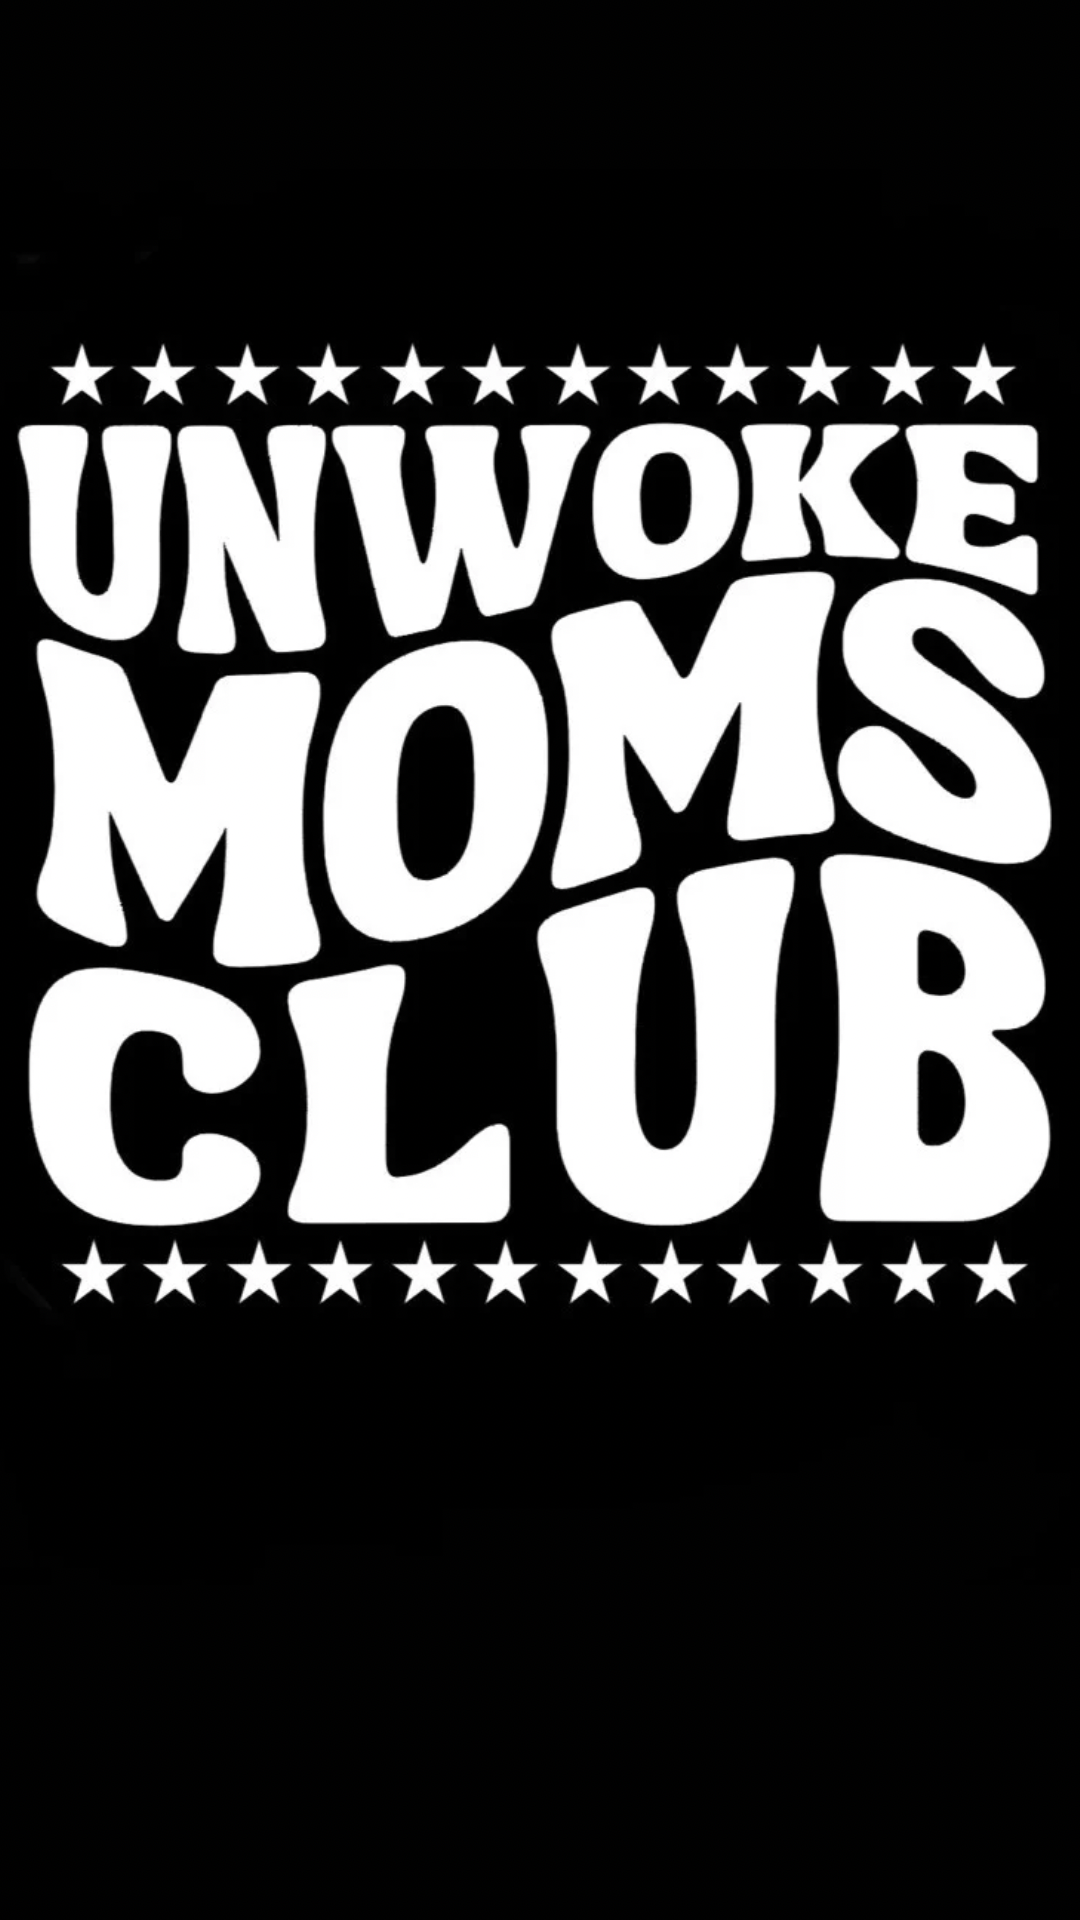 Unwoke Moms Club